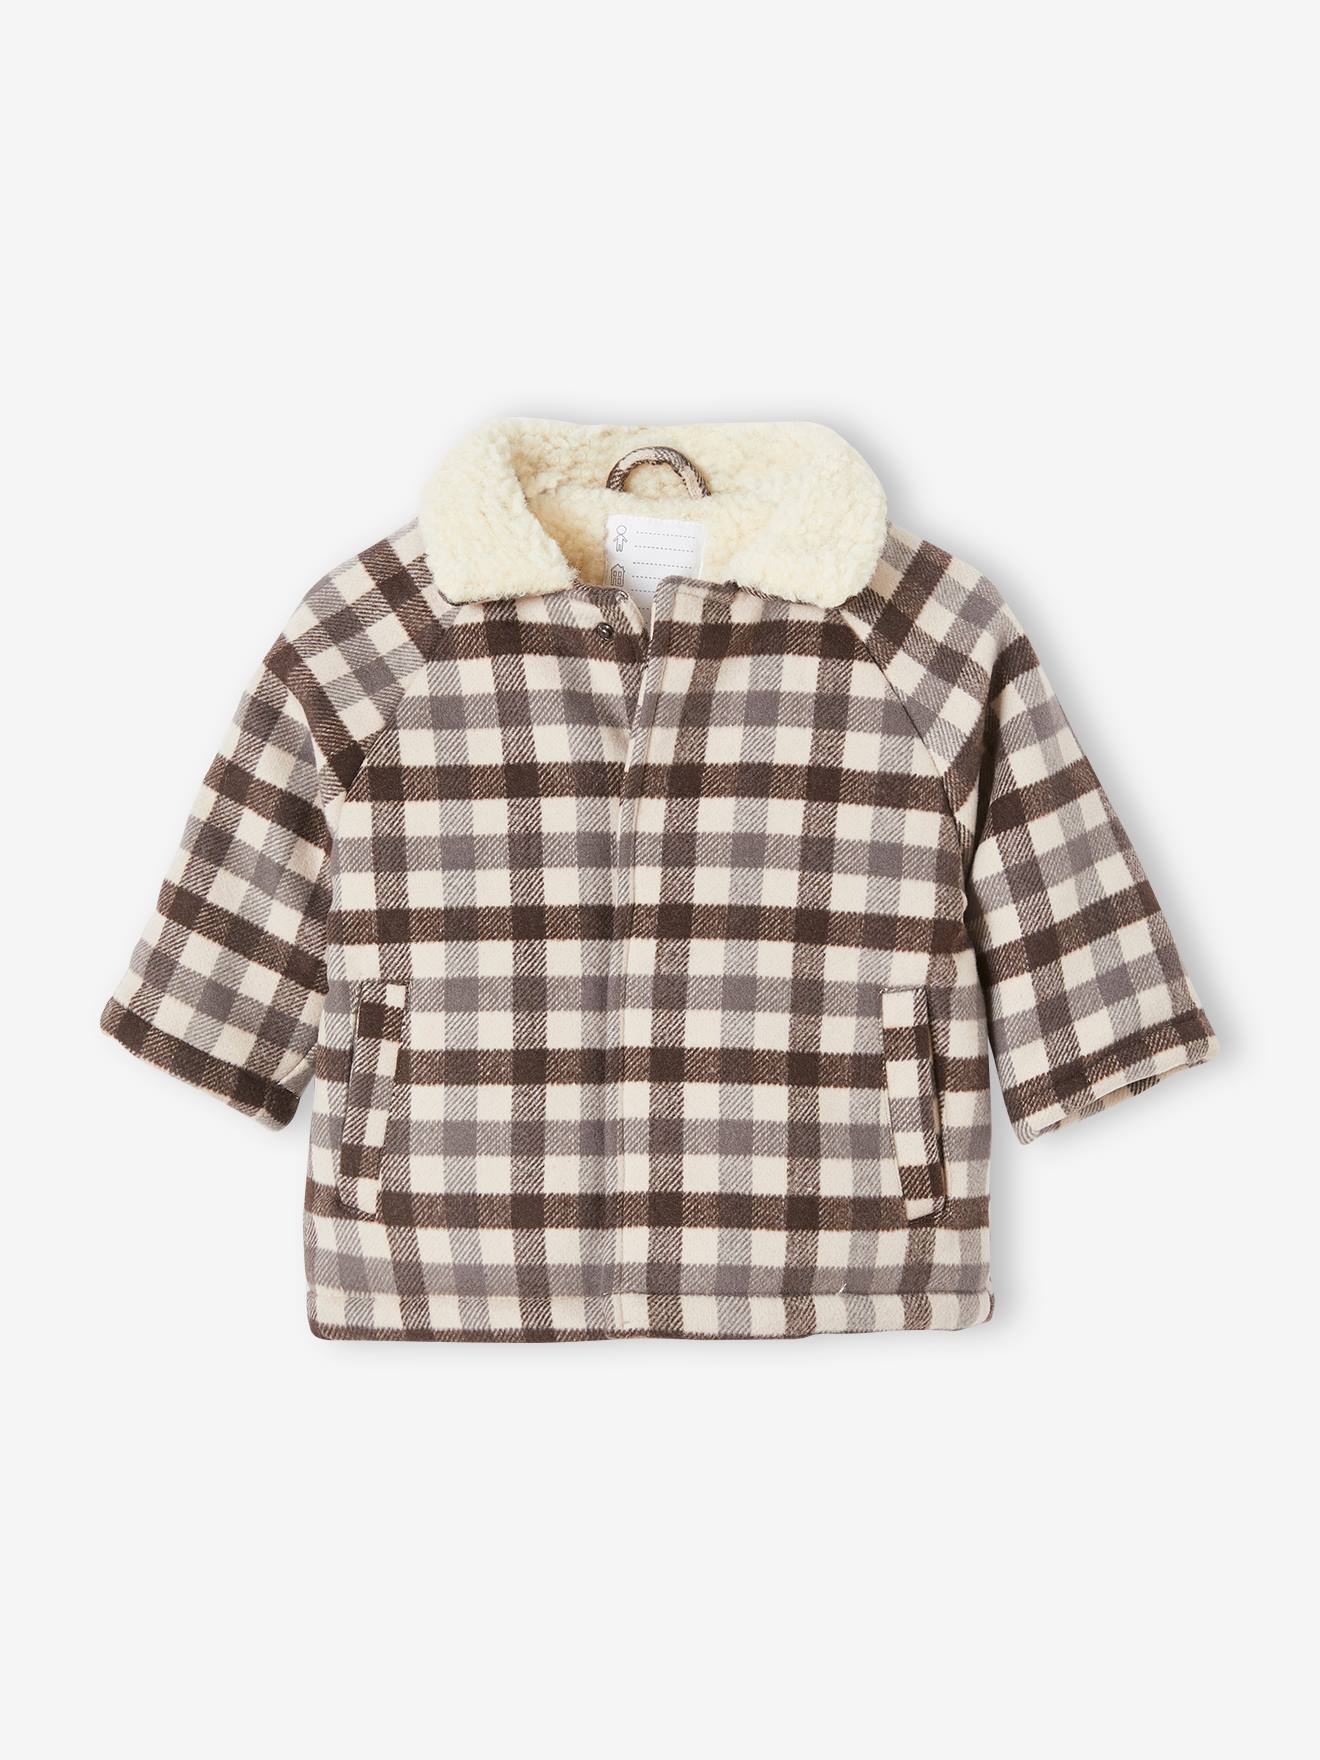 Manteau en drap de laine bébé garnissage en polyester recyclé carreaux anthracite - Vertbaudet